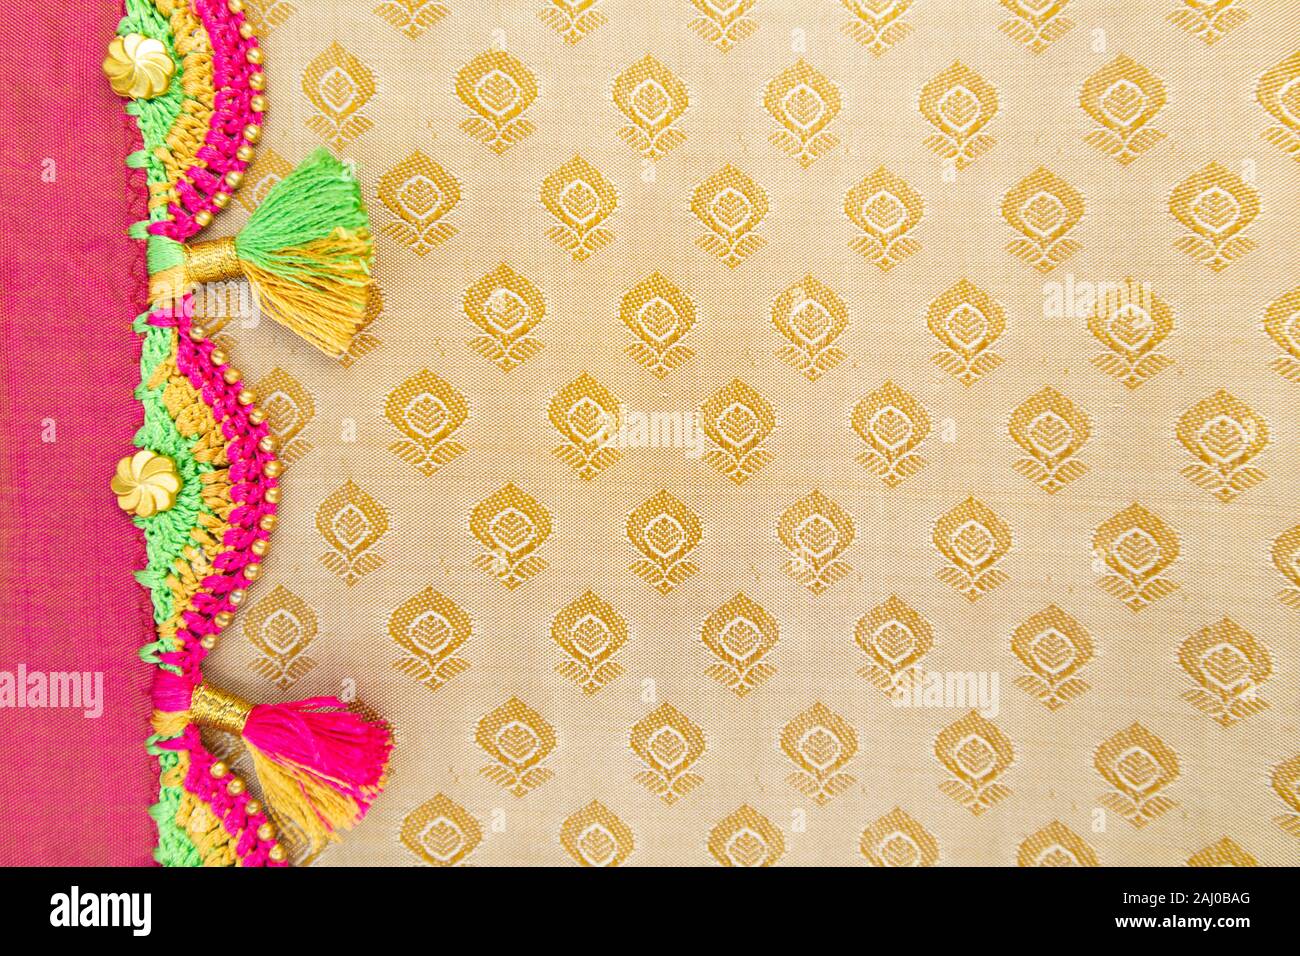 Maski, Inde - Octobre 6, 2019 - Crochet colorés, la conception de mode Tassel travaille sur un chiffon. Banque D'Images